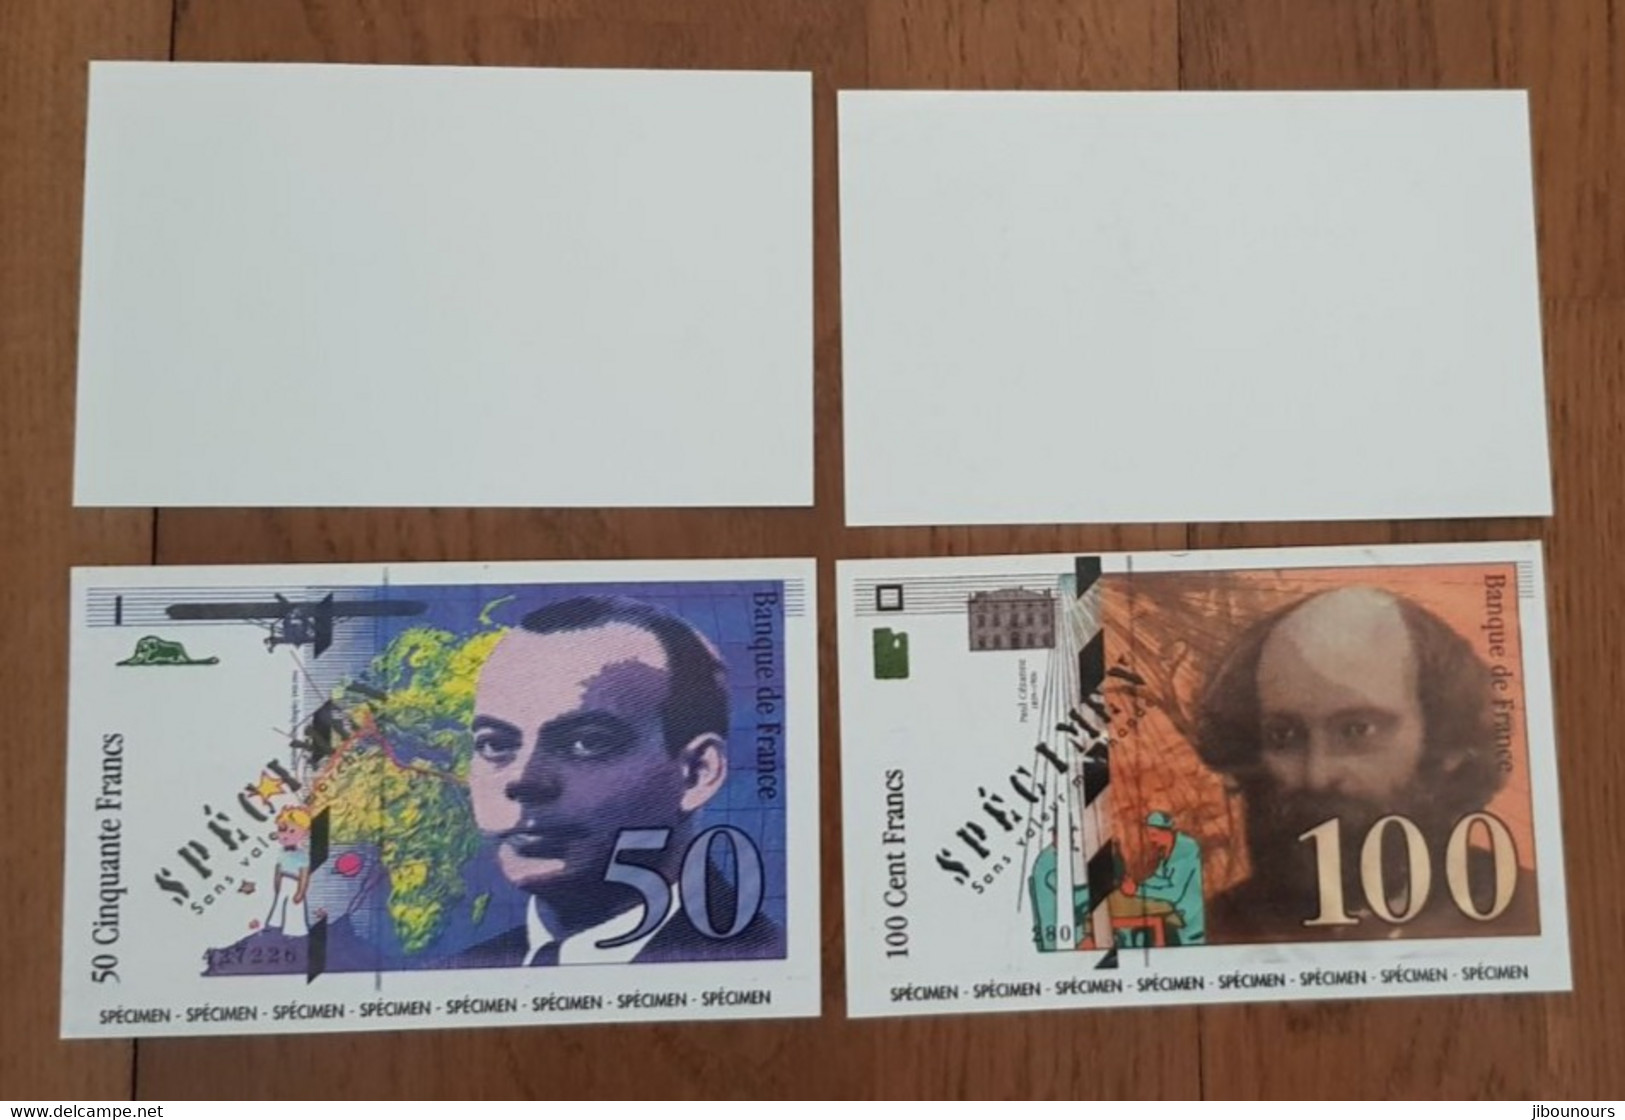 50 Francs Et 100 Francs St Exupéry Petit Prince Et Cézanne Petit Format 11 X 6.8 Cm - Ficción & Especímenes